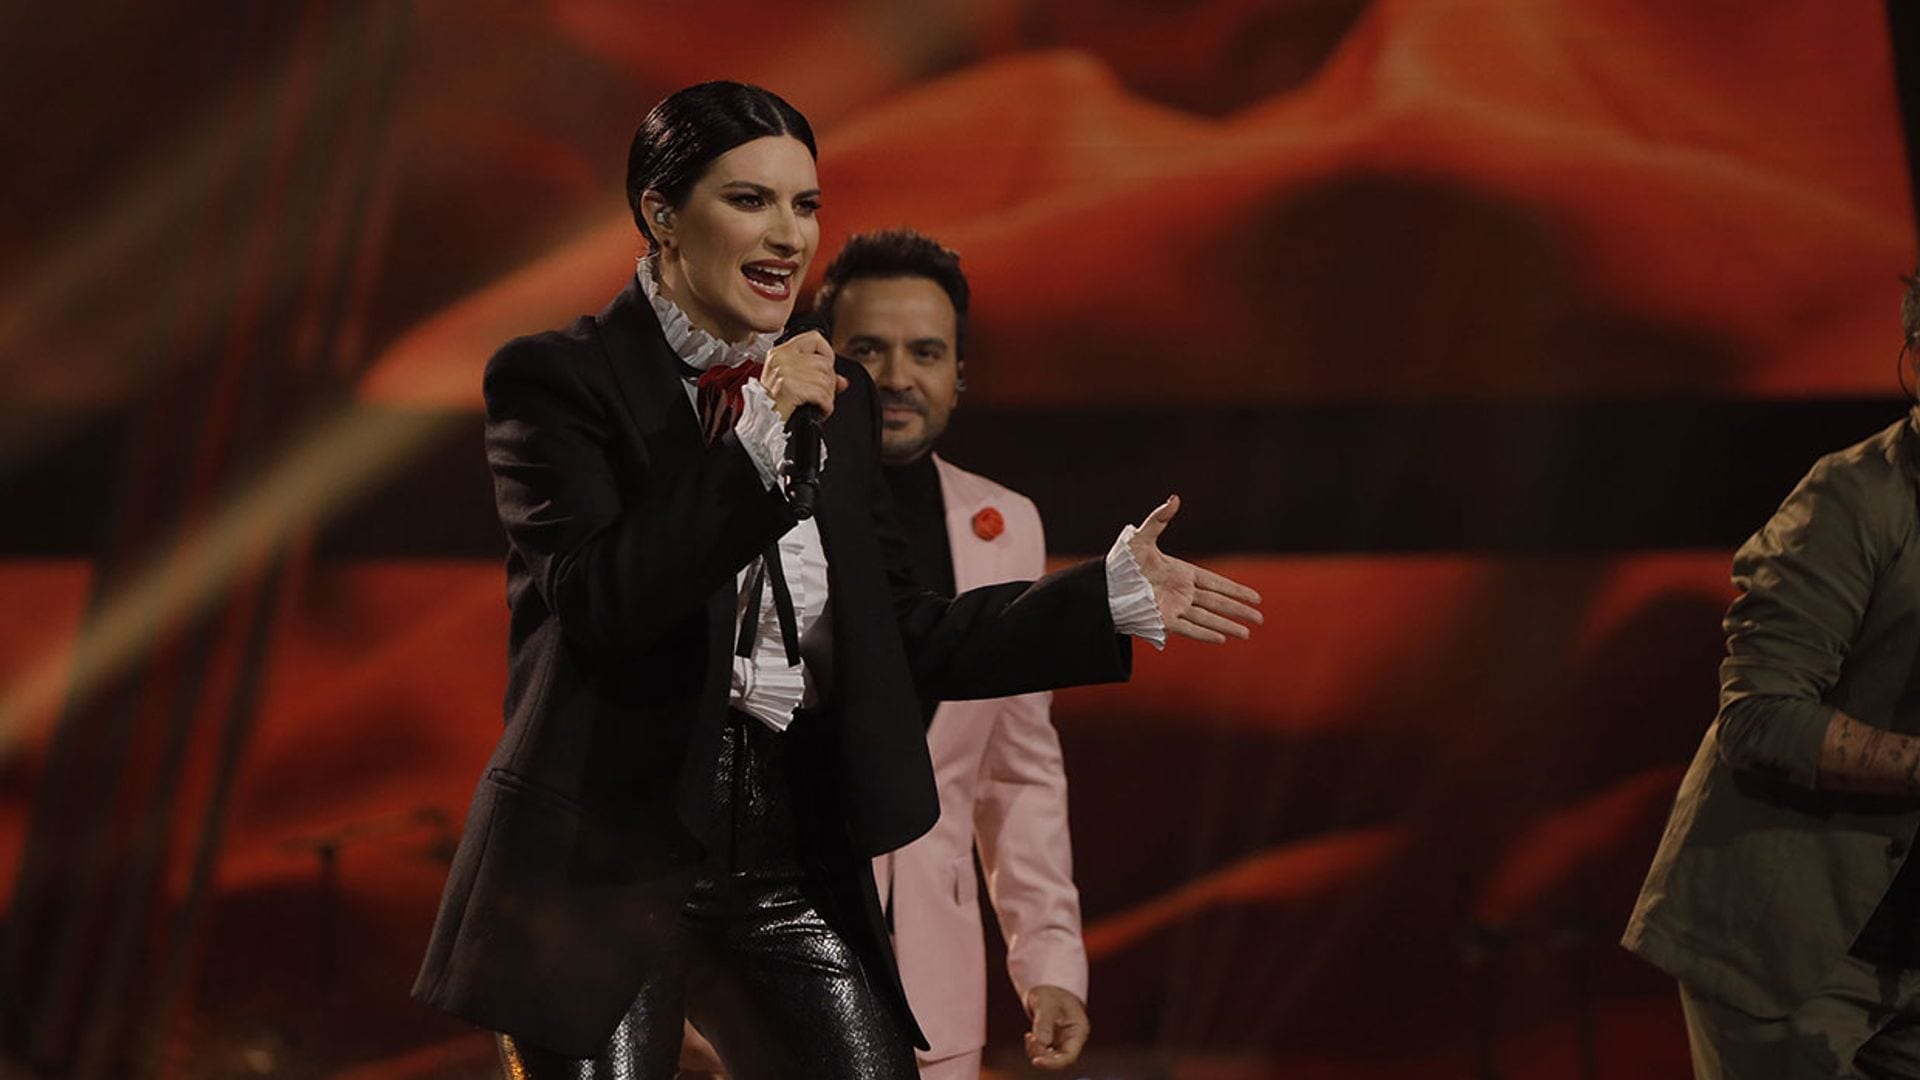 Noche de emociones para Laura Pausini en 'La Voz': de actuar con todos sus compañeros a decir adiós a dos de sus pupilos